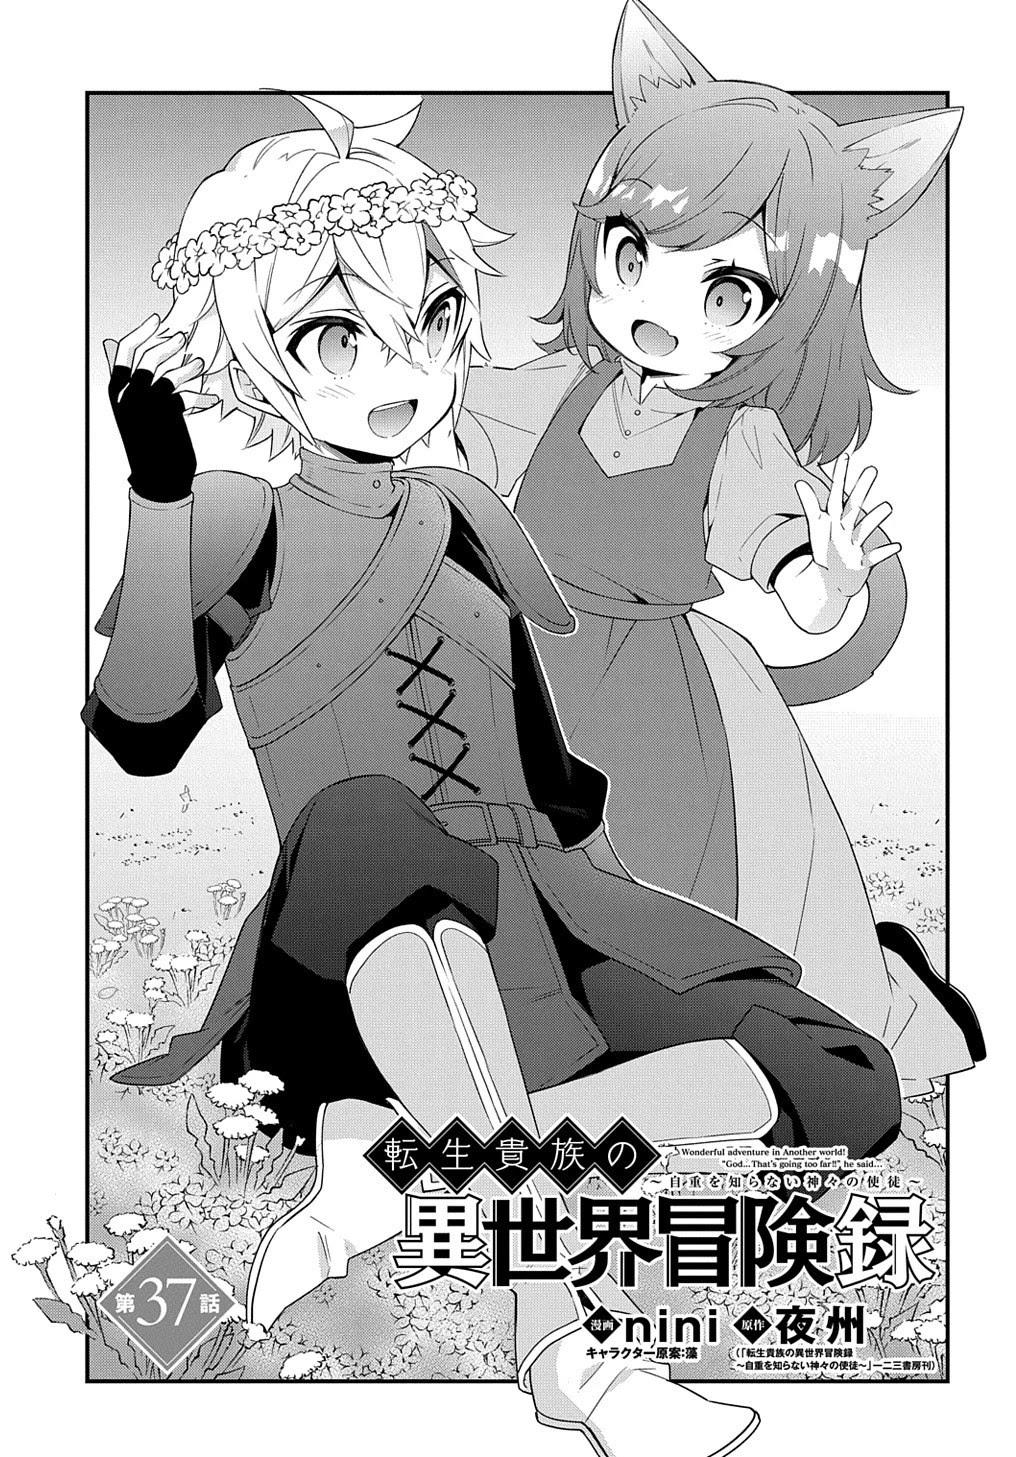 Read Tensei Kizoku No Isekai Boukenroku ~Jichou Wo Shiranai Kamigami No  Shito~ Chapter 37 on Mangakakalot